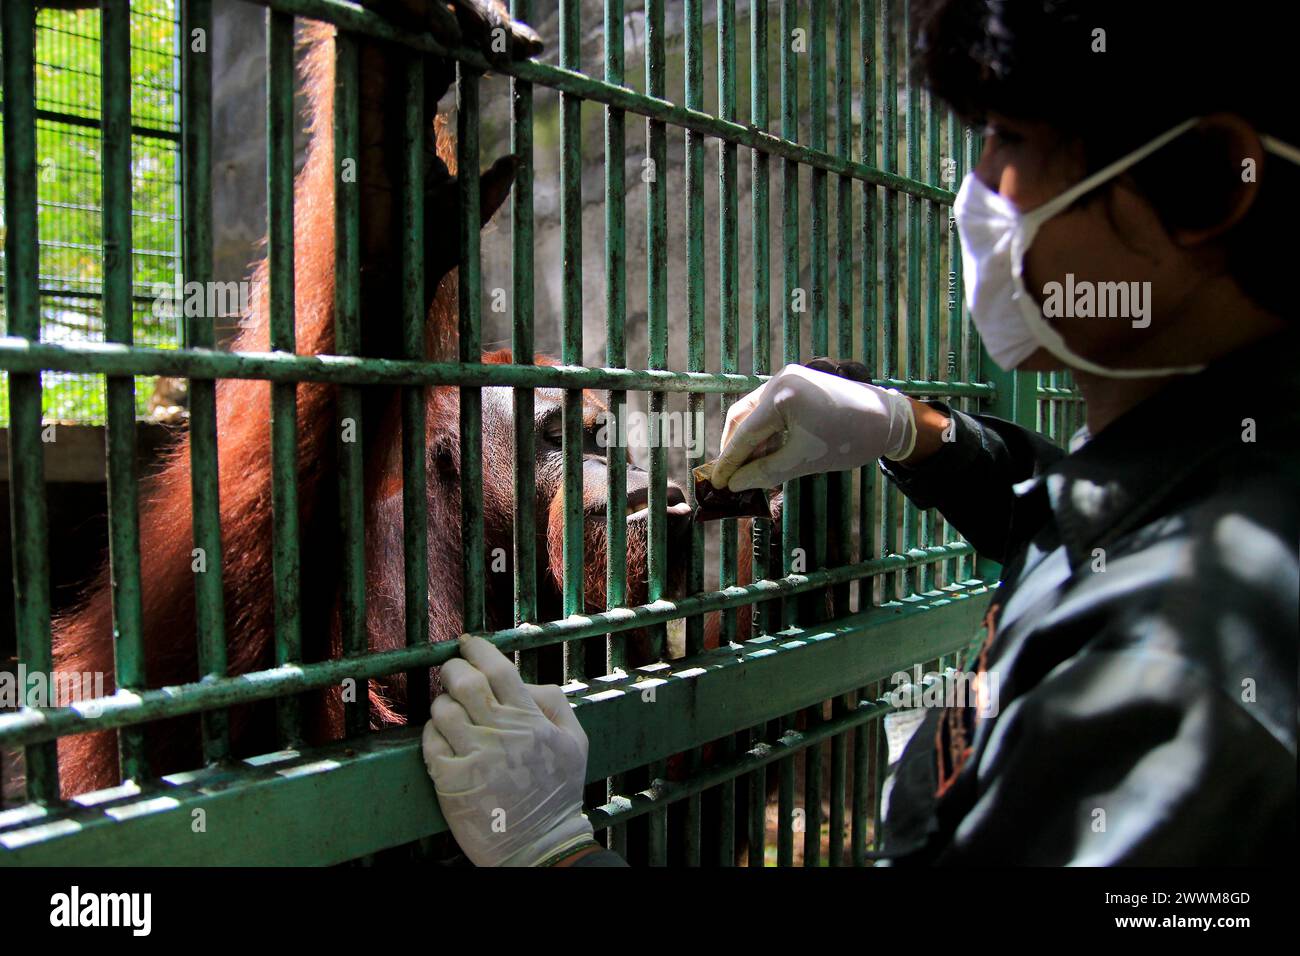 Les orangs-outans adultes de Bornéo (Pongo pygmaeus) semblent heureux lorsque les gardiens d'animaux donnent des vitamines emballées dans des sacs en plastique au Wildlife Rescue Center. Banque D'Images